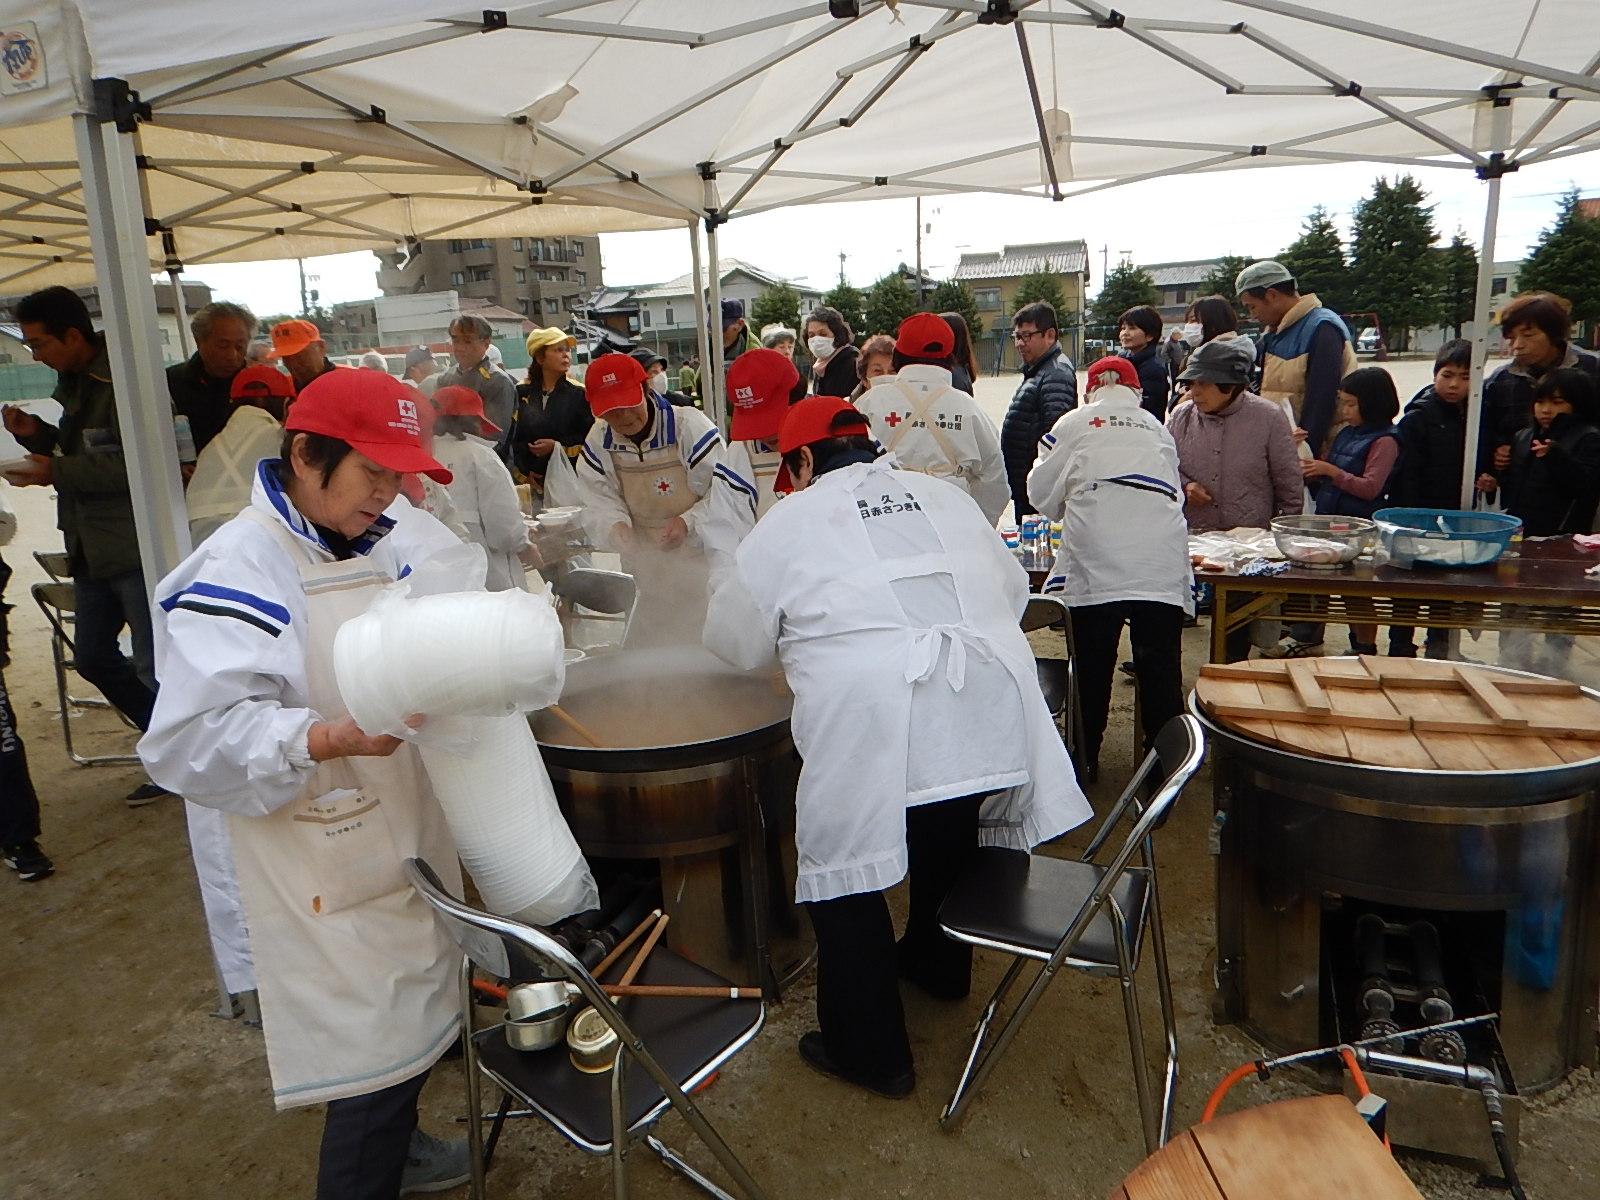 テントの下で赤い帽子を被り白いエプロンを付けた人々が大きな鍋で炊き出しを行っている写真